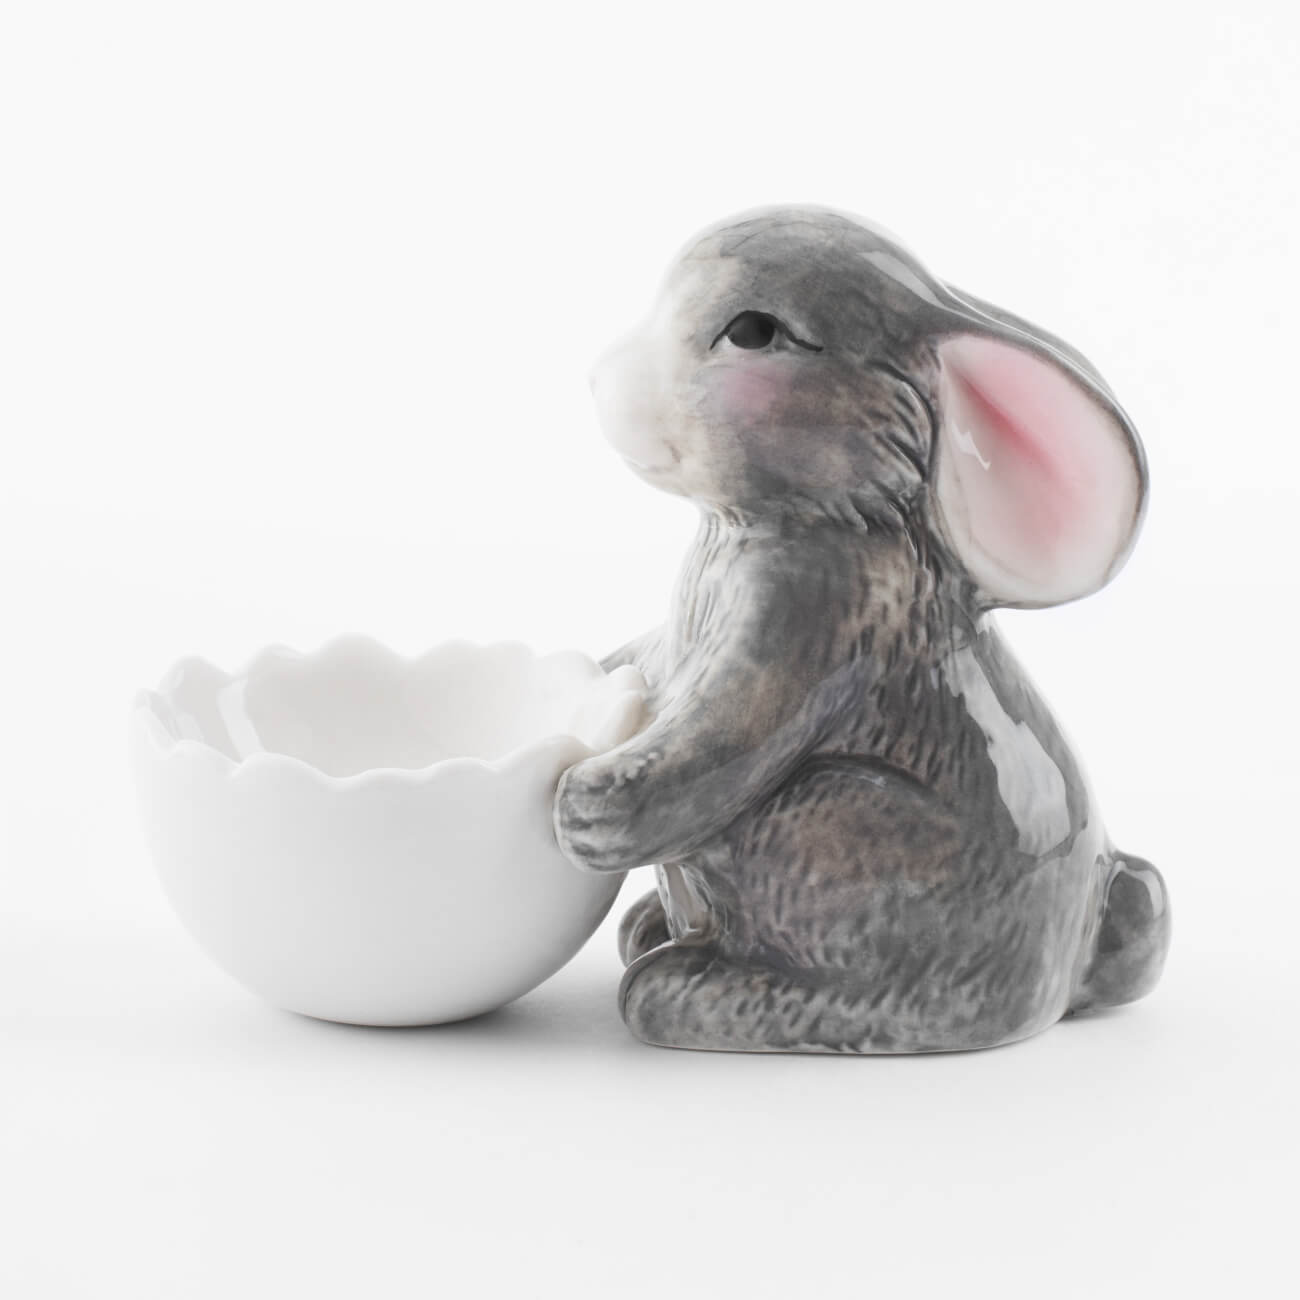 Подставка для яйца, 11 см, фарфор P, бело-серая, Кролик со скорлупой, Pure Easter подставка для канцелярских мелочей 3 отделения серая сетка